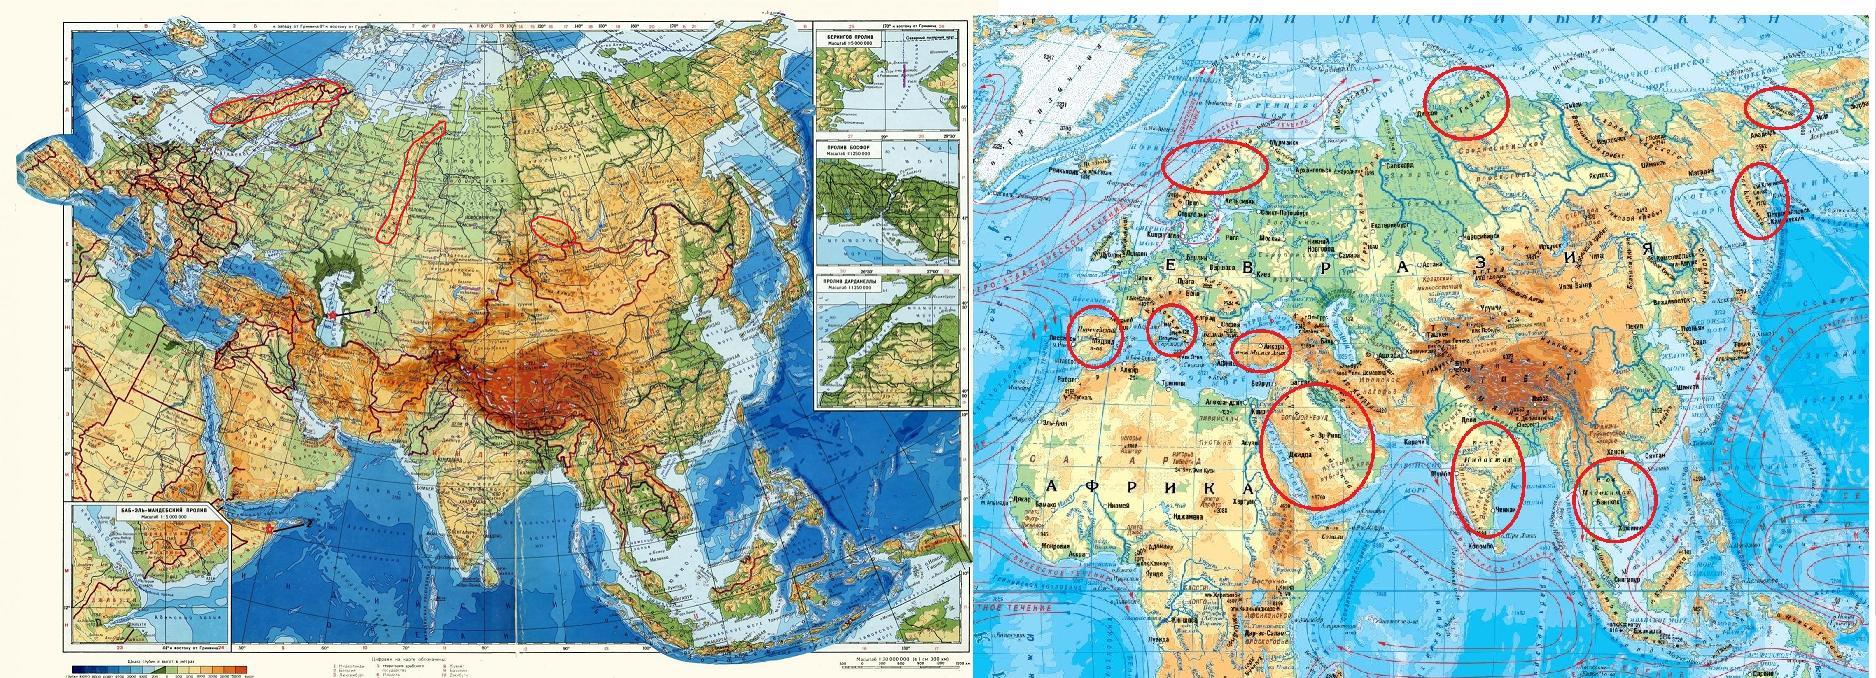 Евразия занимает. Граница Европы и Азии на карте Евразии. Какре место занимает Евразия по площади. Объединенная Евразия.